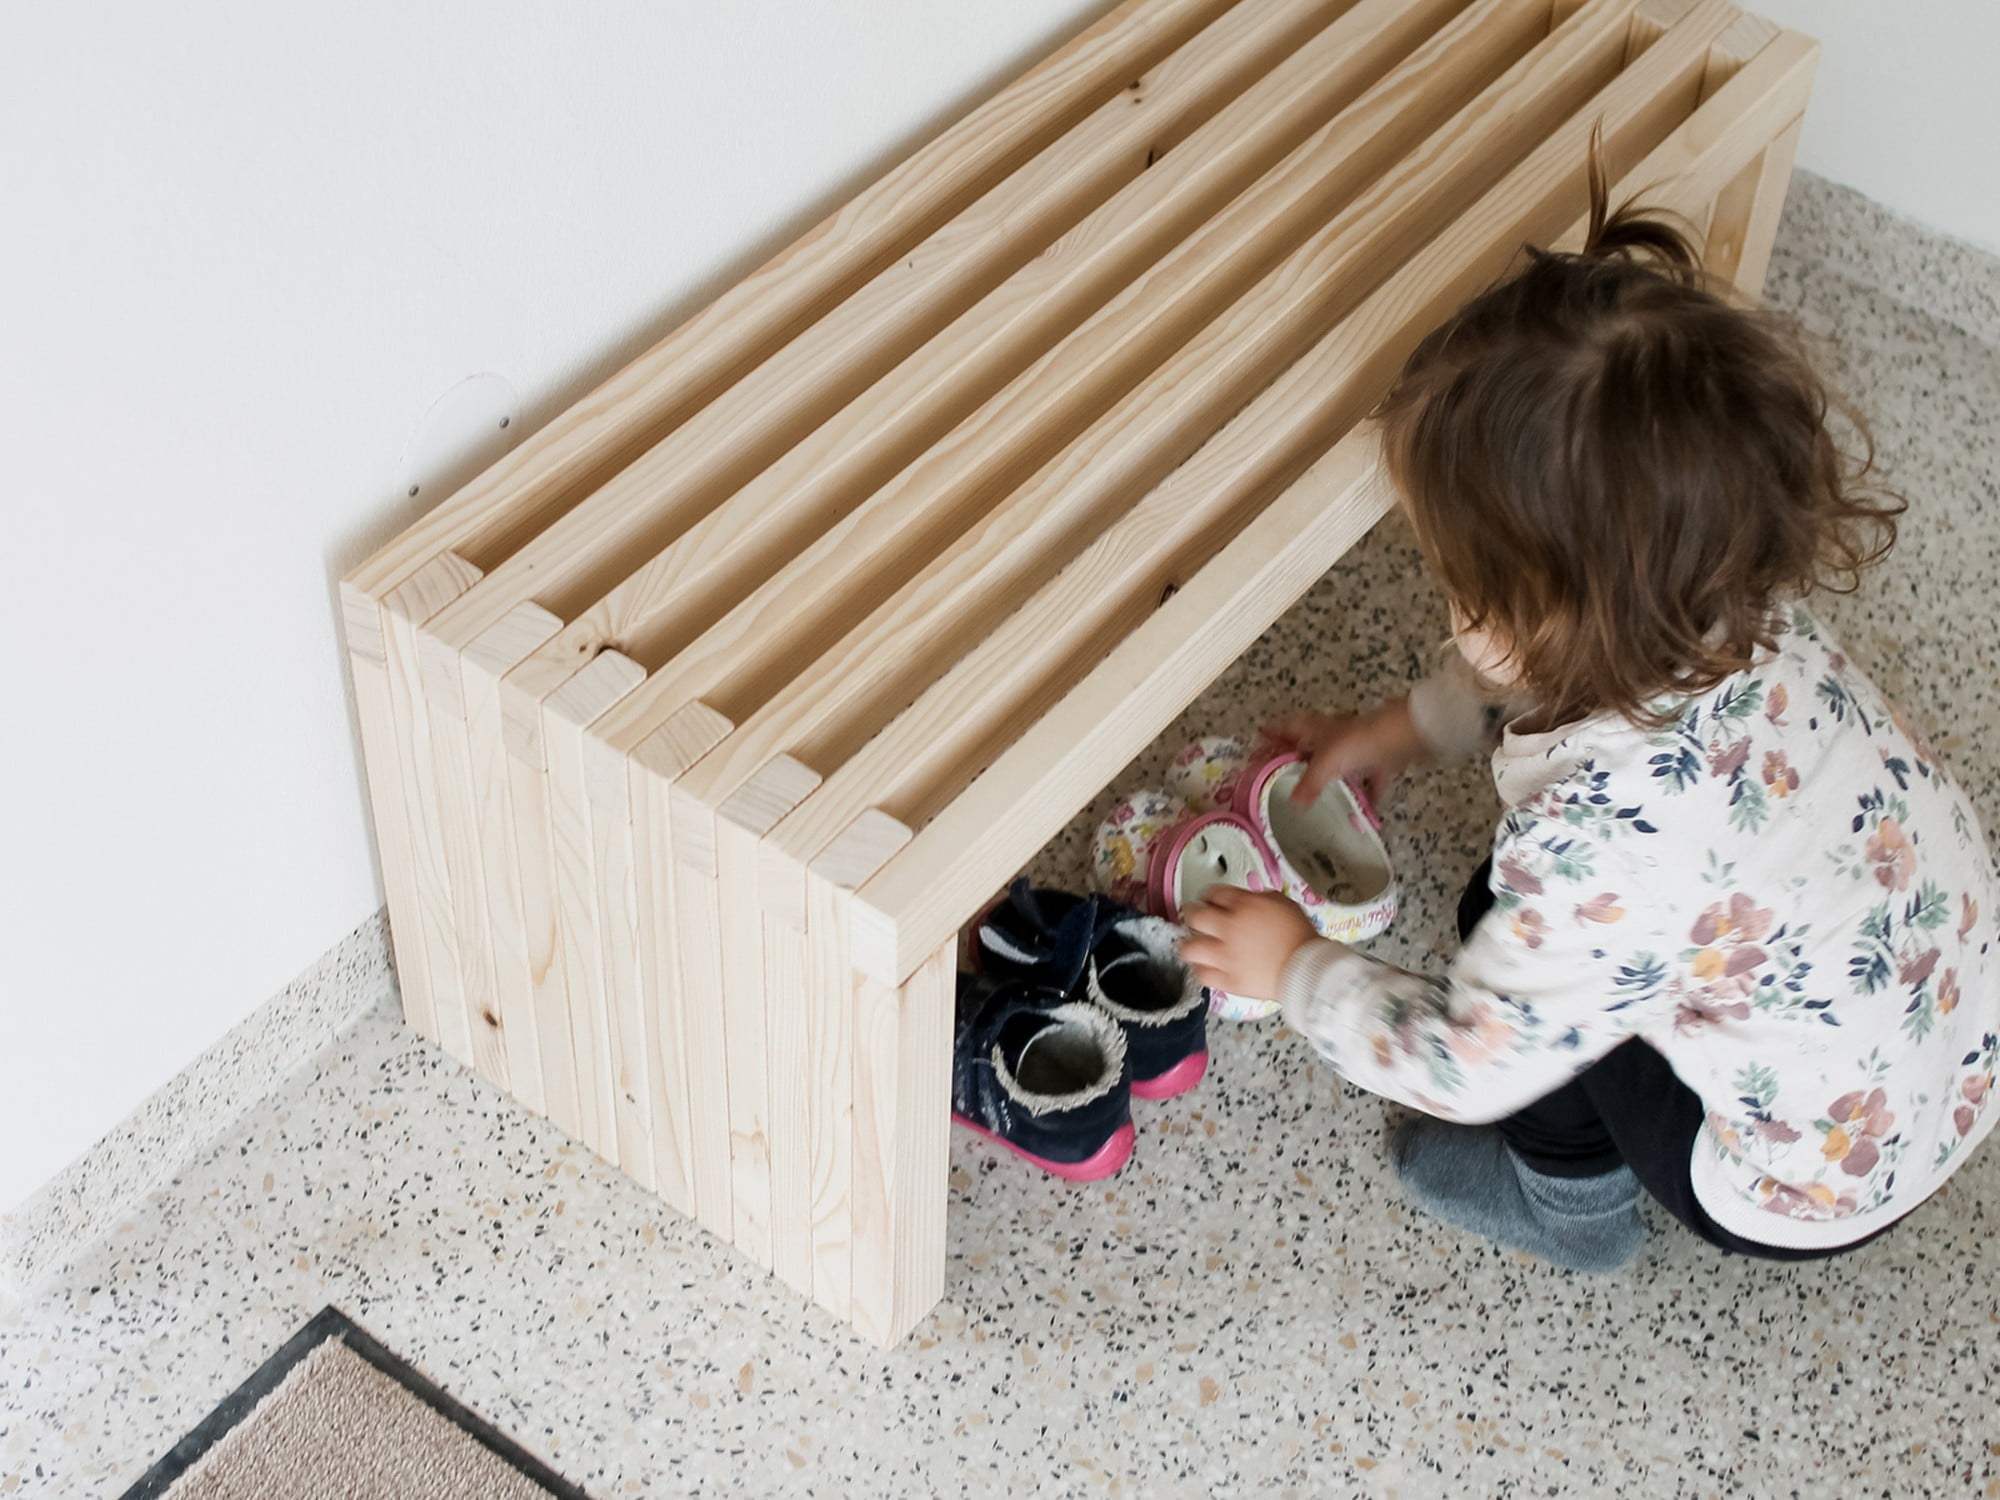 A fapad magassága gyermekek számára alkalmas, de a magasság megváltoztatásával felnőtteknek megfelelően is elkészíthető.